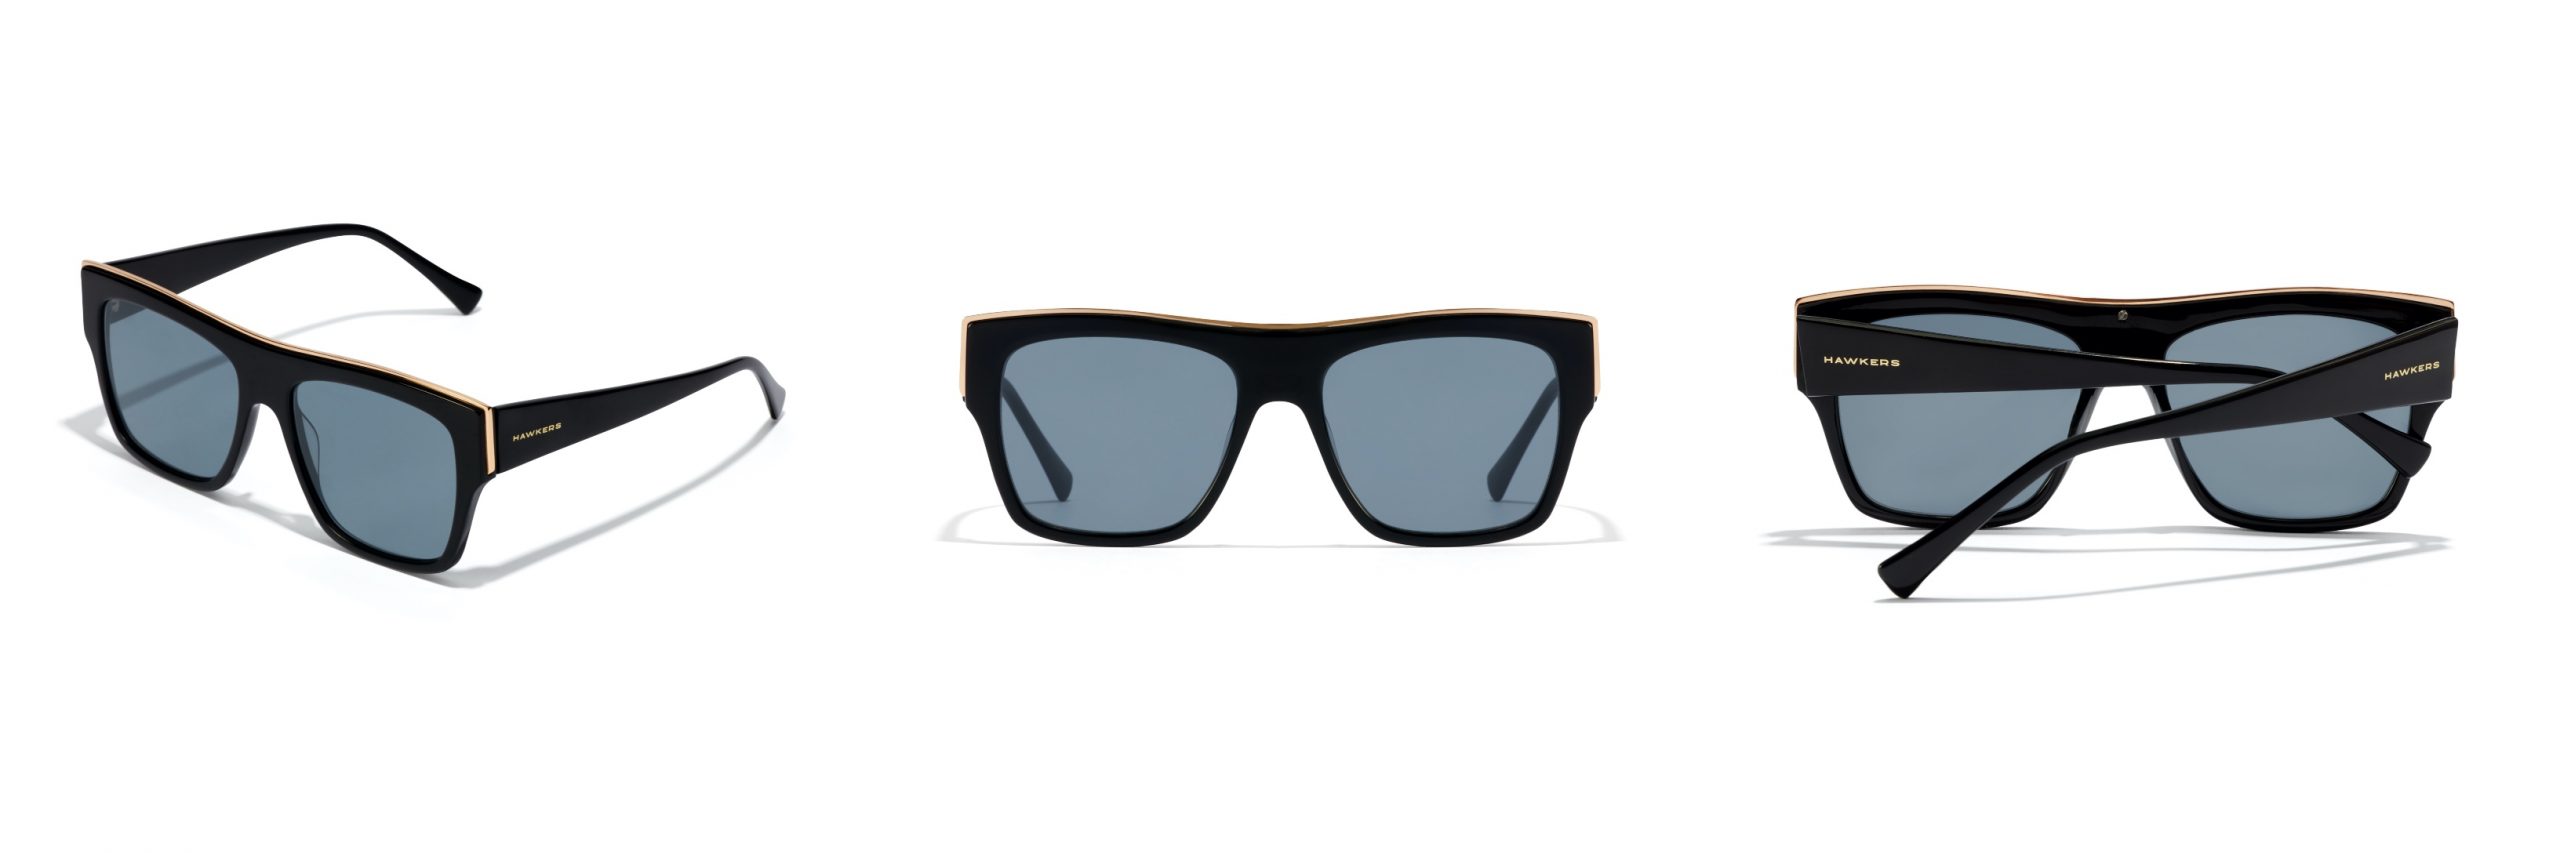 Modelo de gafas Doumu Metal de Hawkers. Cuenta con montura de acetato y lentes de color negro mas una tira metálica en la parte superior frontal.